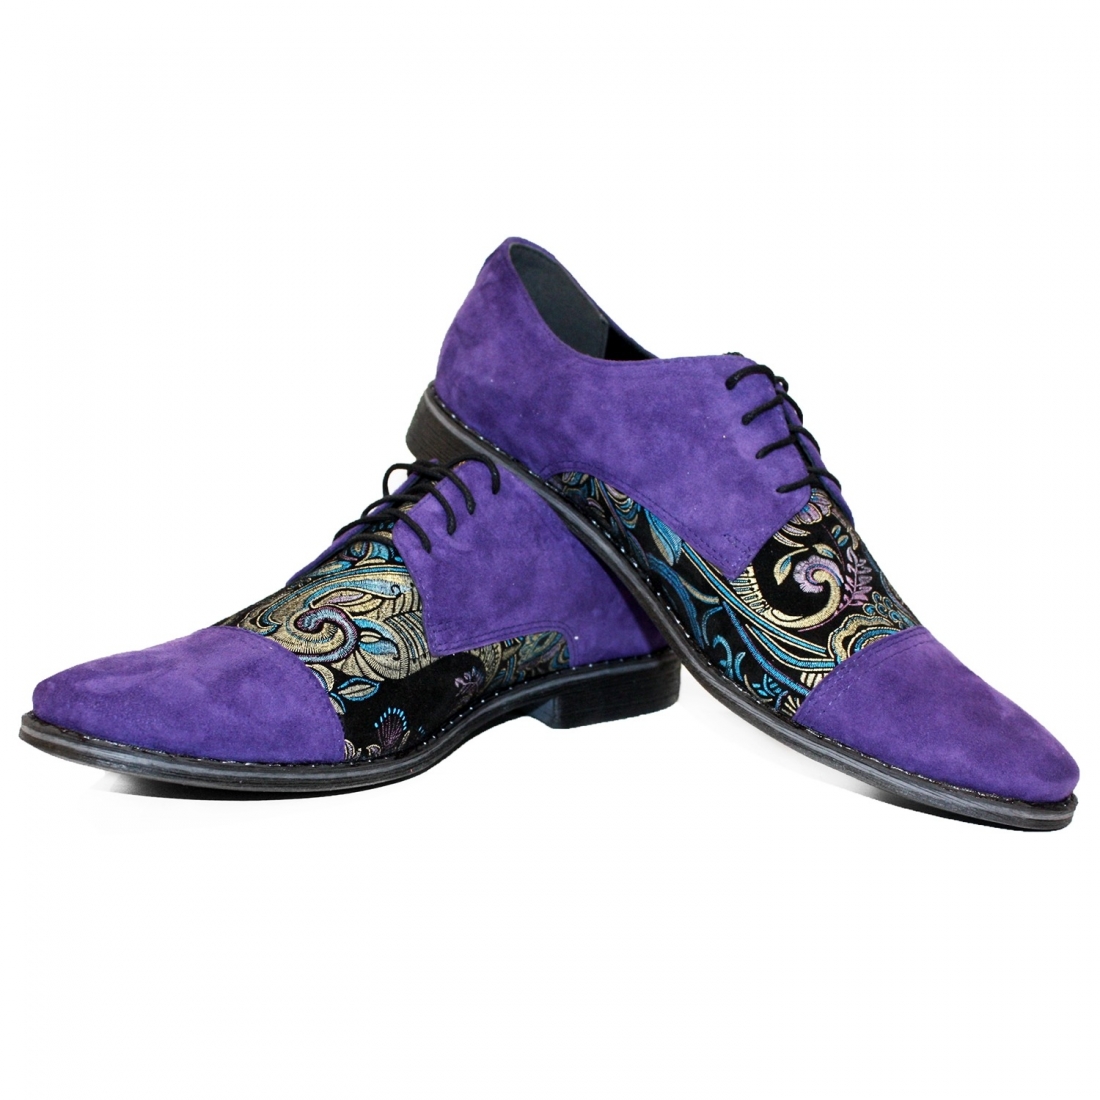 Modello Fioletto - Buty Klasyczne - Handmade Colorful Italian Leather Shoes